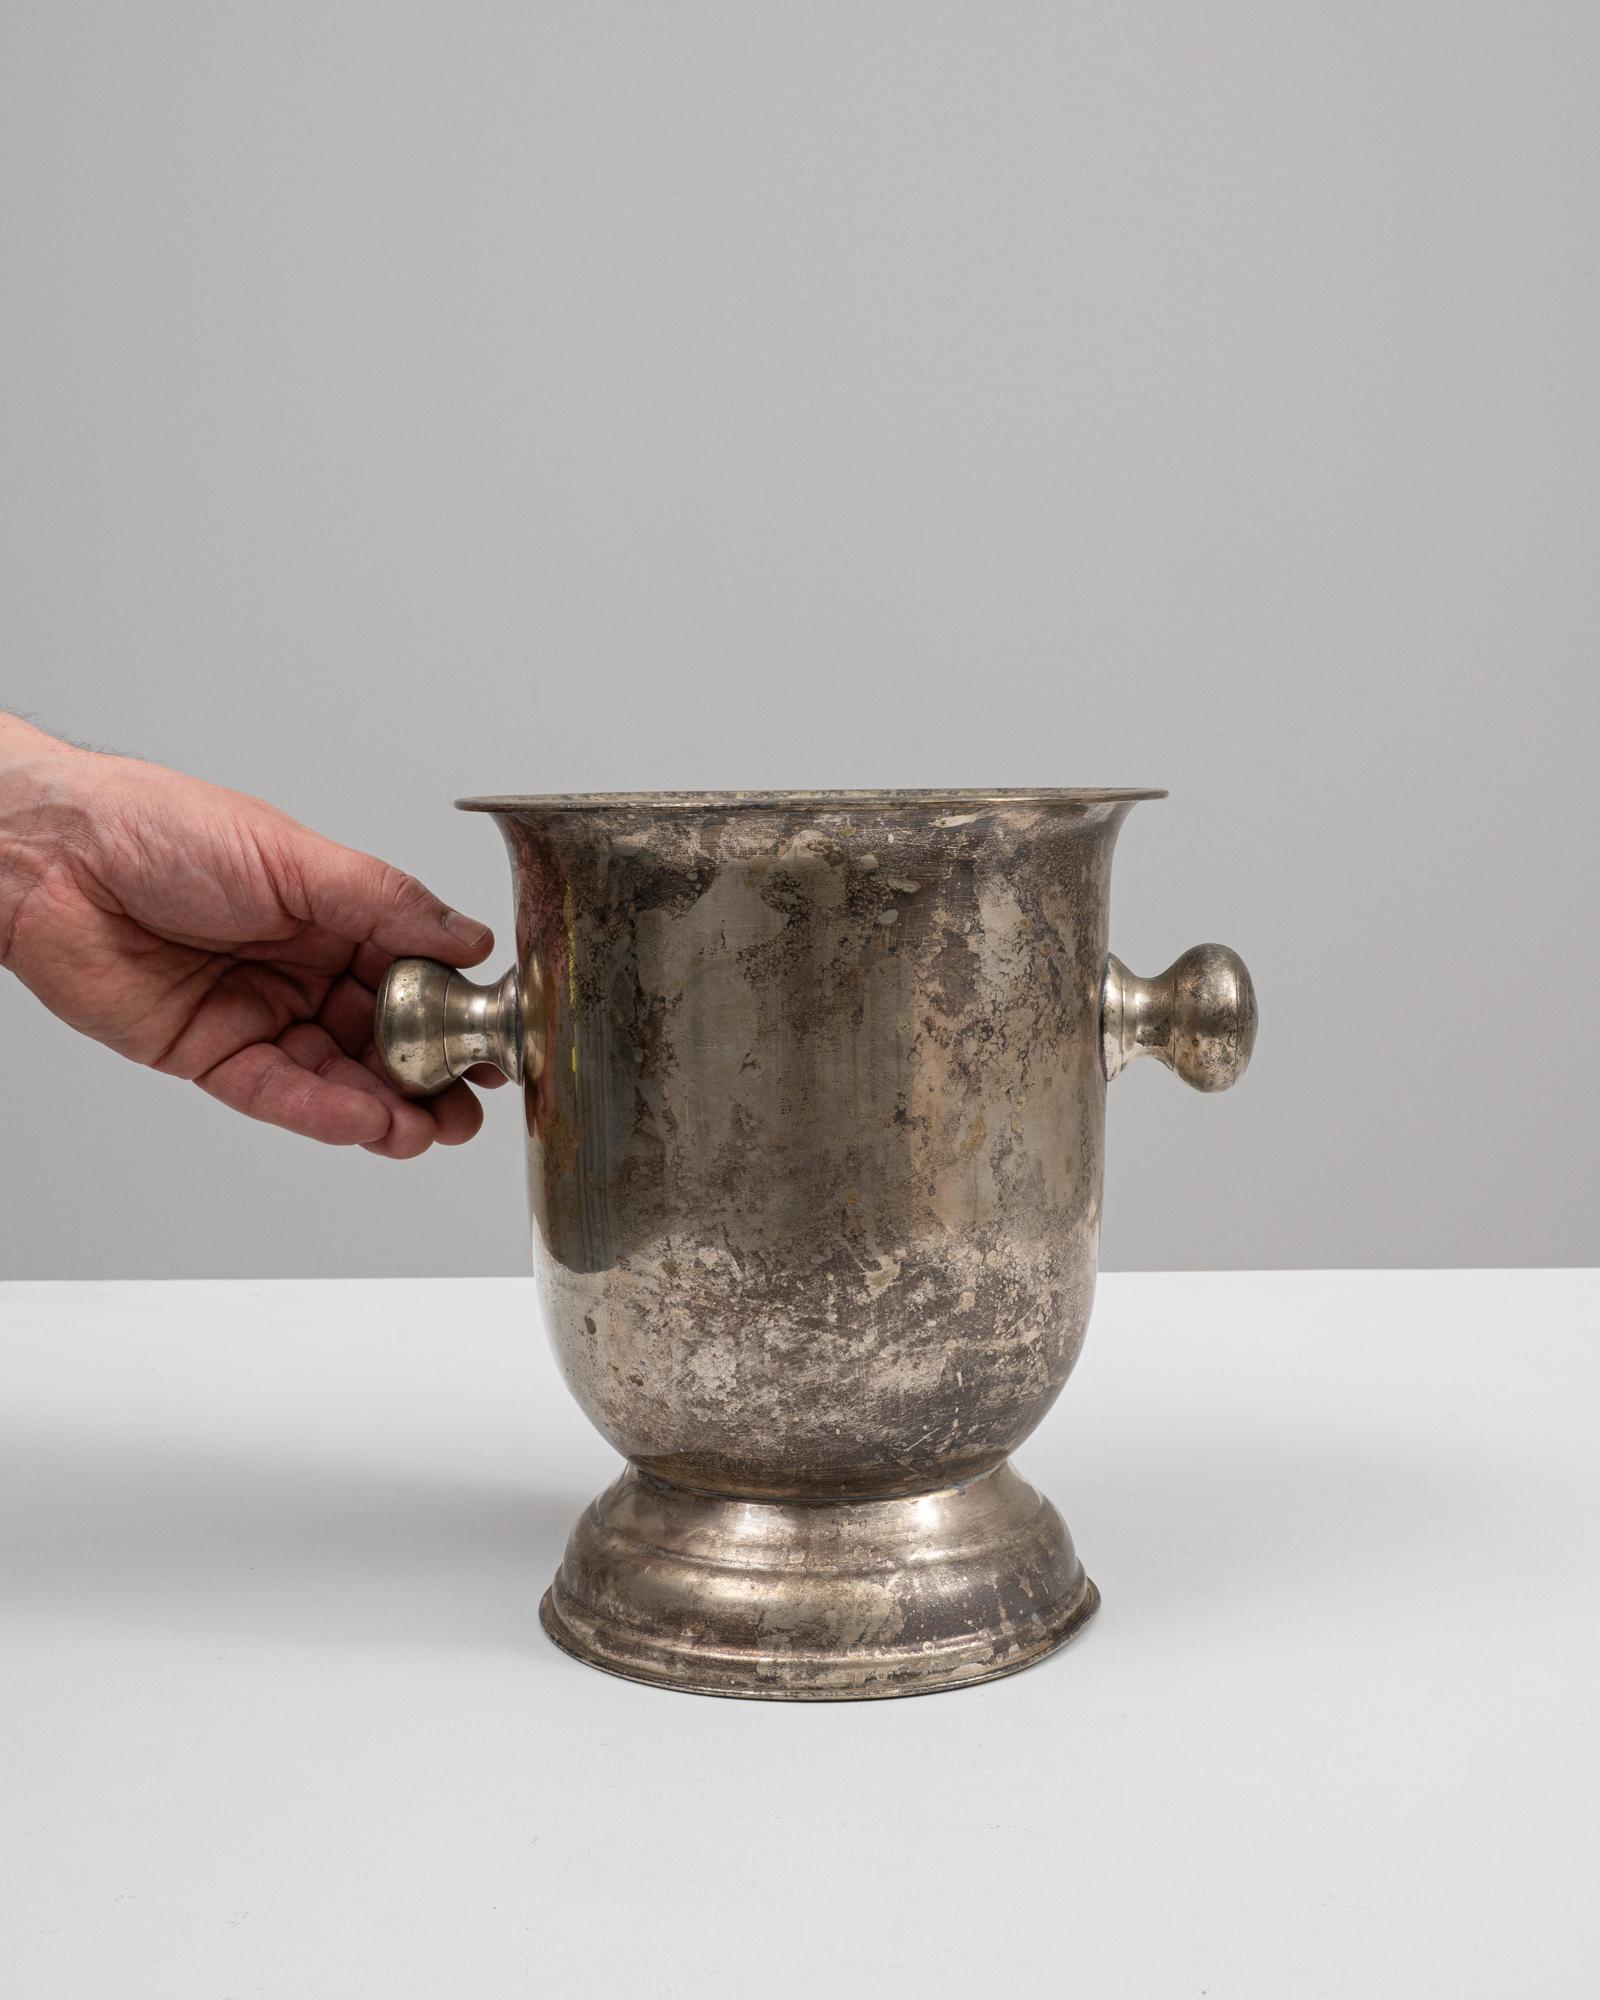 Voici l'exquis seau à glace en métal français du XIXe siècle, véritable incarnation du charme et de l'élégance d'antan. Cette pièce ornée capture l'essence de l'artisanat français classique avec sa construction solide en métal vieilli et ses